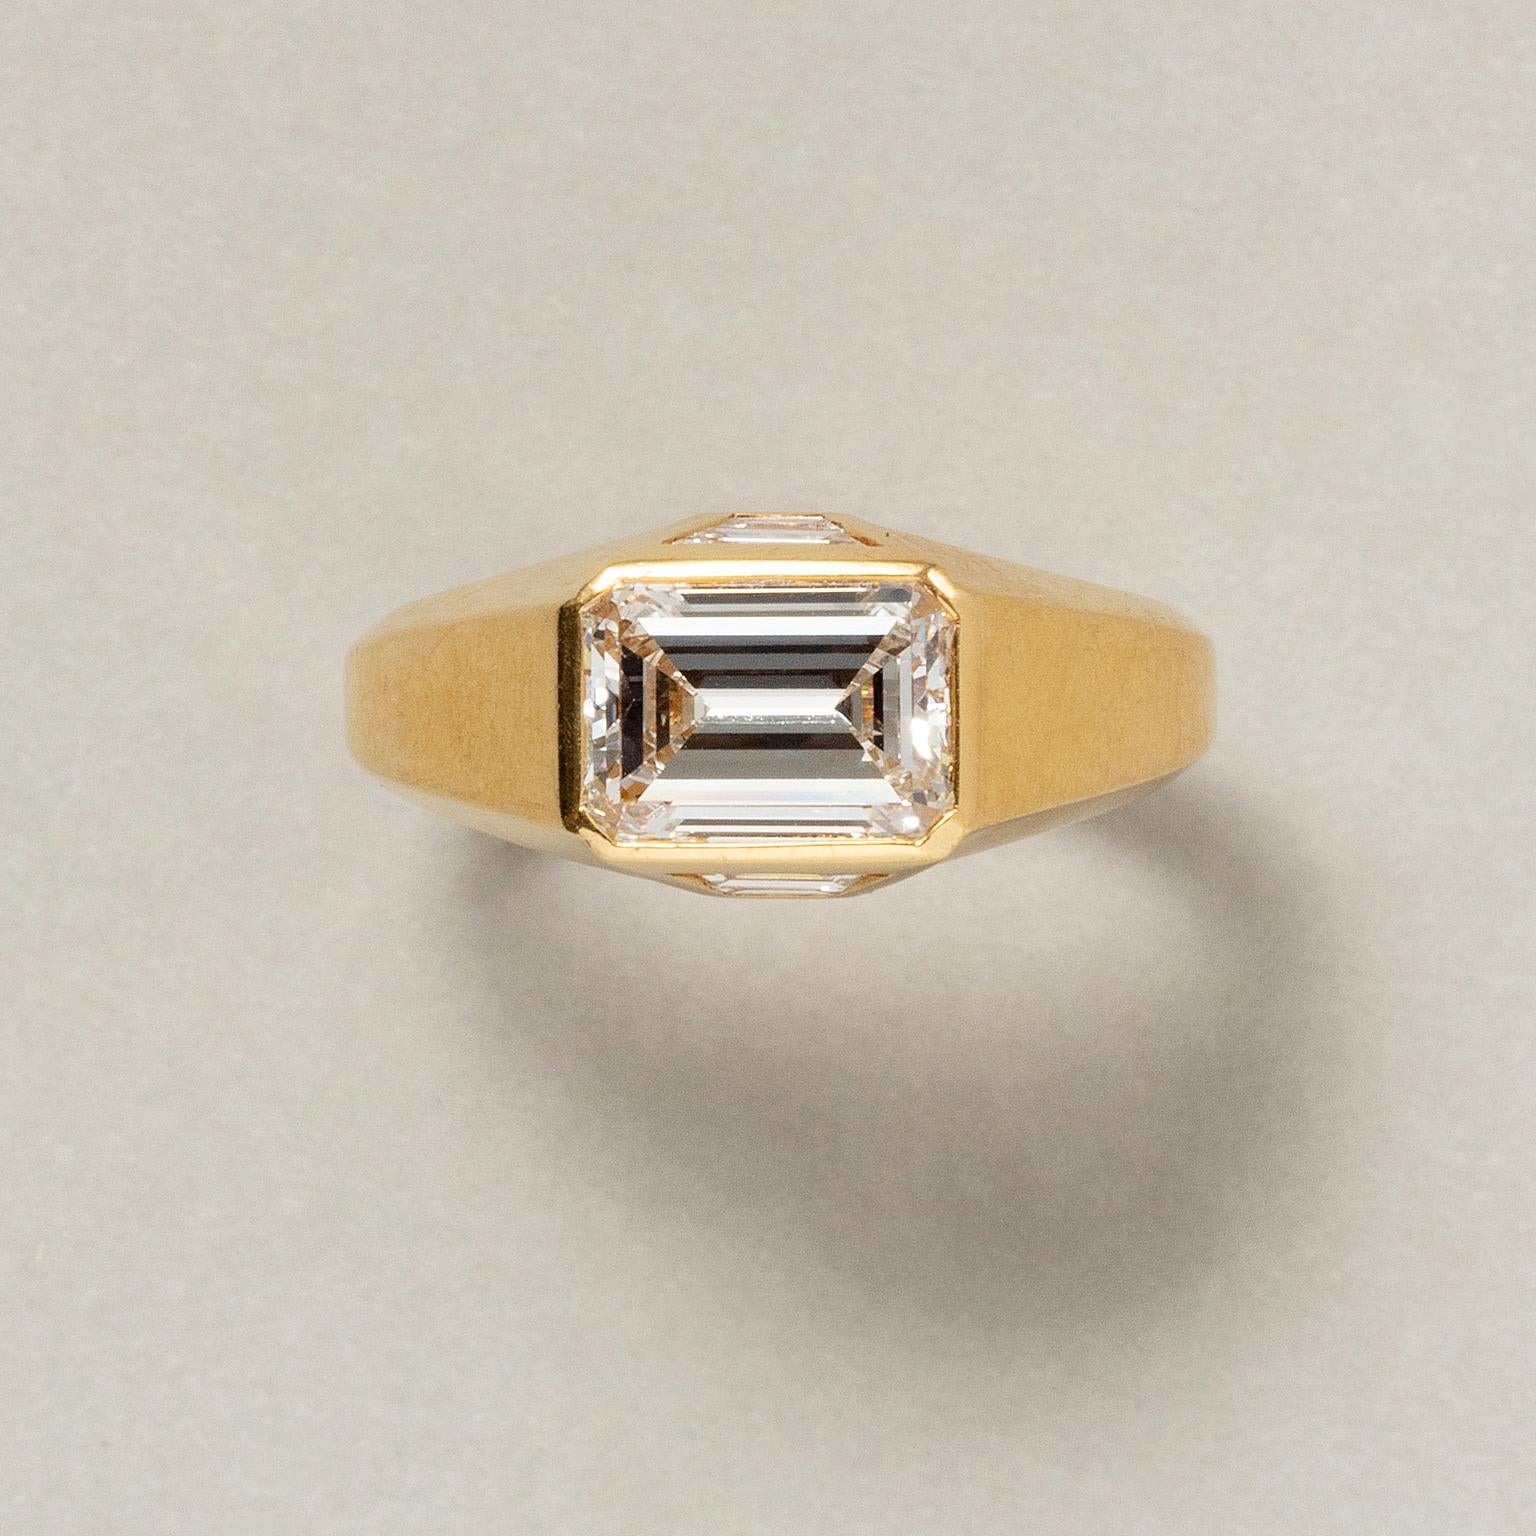 Ein Single Stone Ring aus 18 Karat Gold, besetzt mit einem Diamanten im Stufenschliff und je einem Dreieck mit zwei Diamanten im Trapezschliff (insgesamt 1,77 ct, F - Vvs), signiert: Bulgari, Rom.

Ringgröße: 17,25 mm / 6 3/4 US
Gewicht: 7,17 Gramm